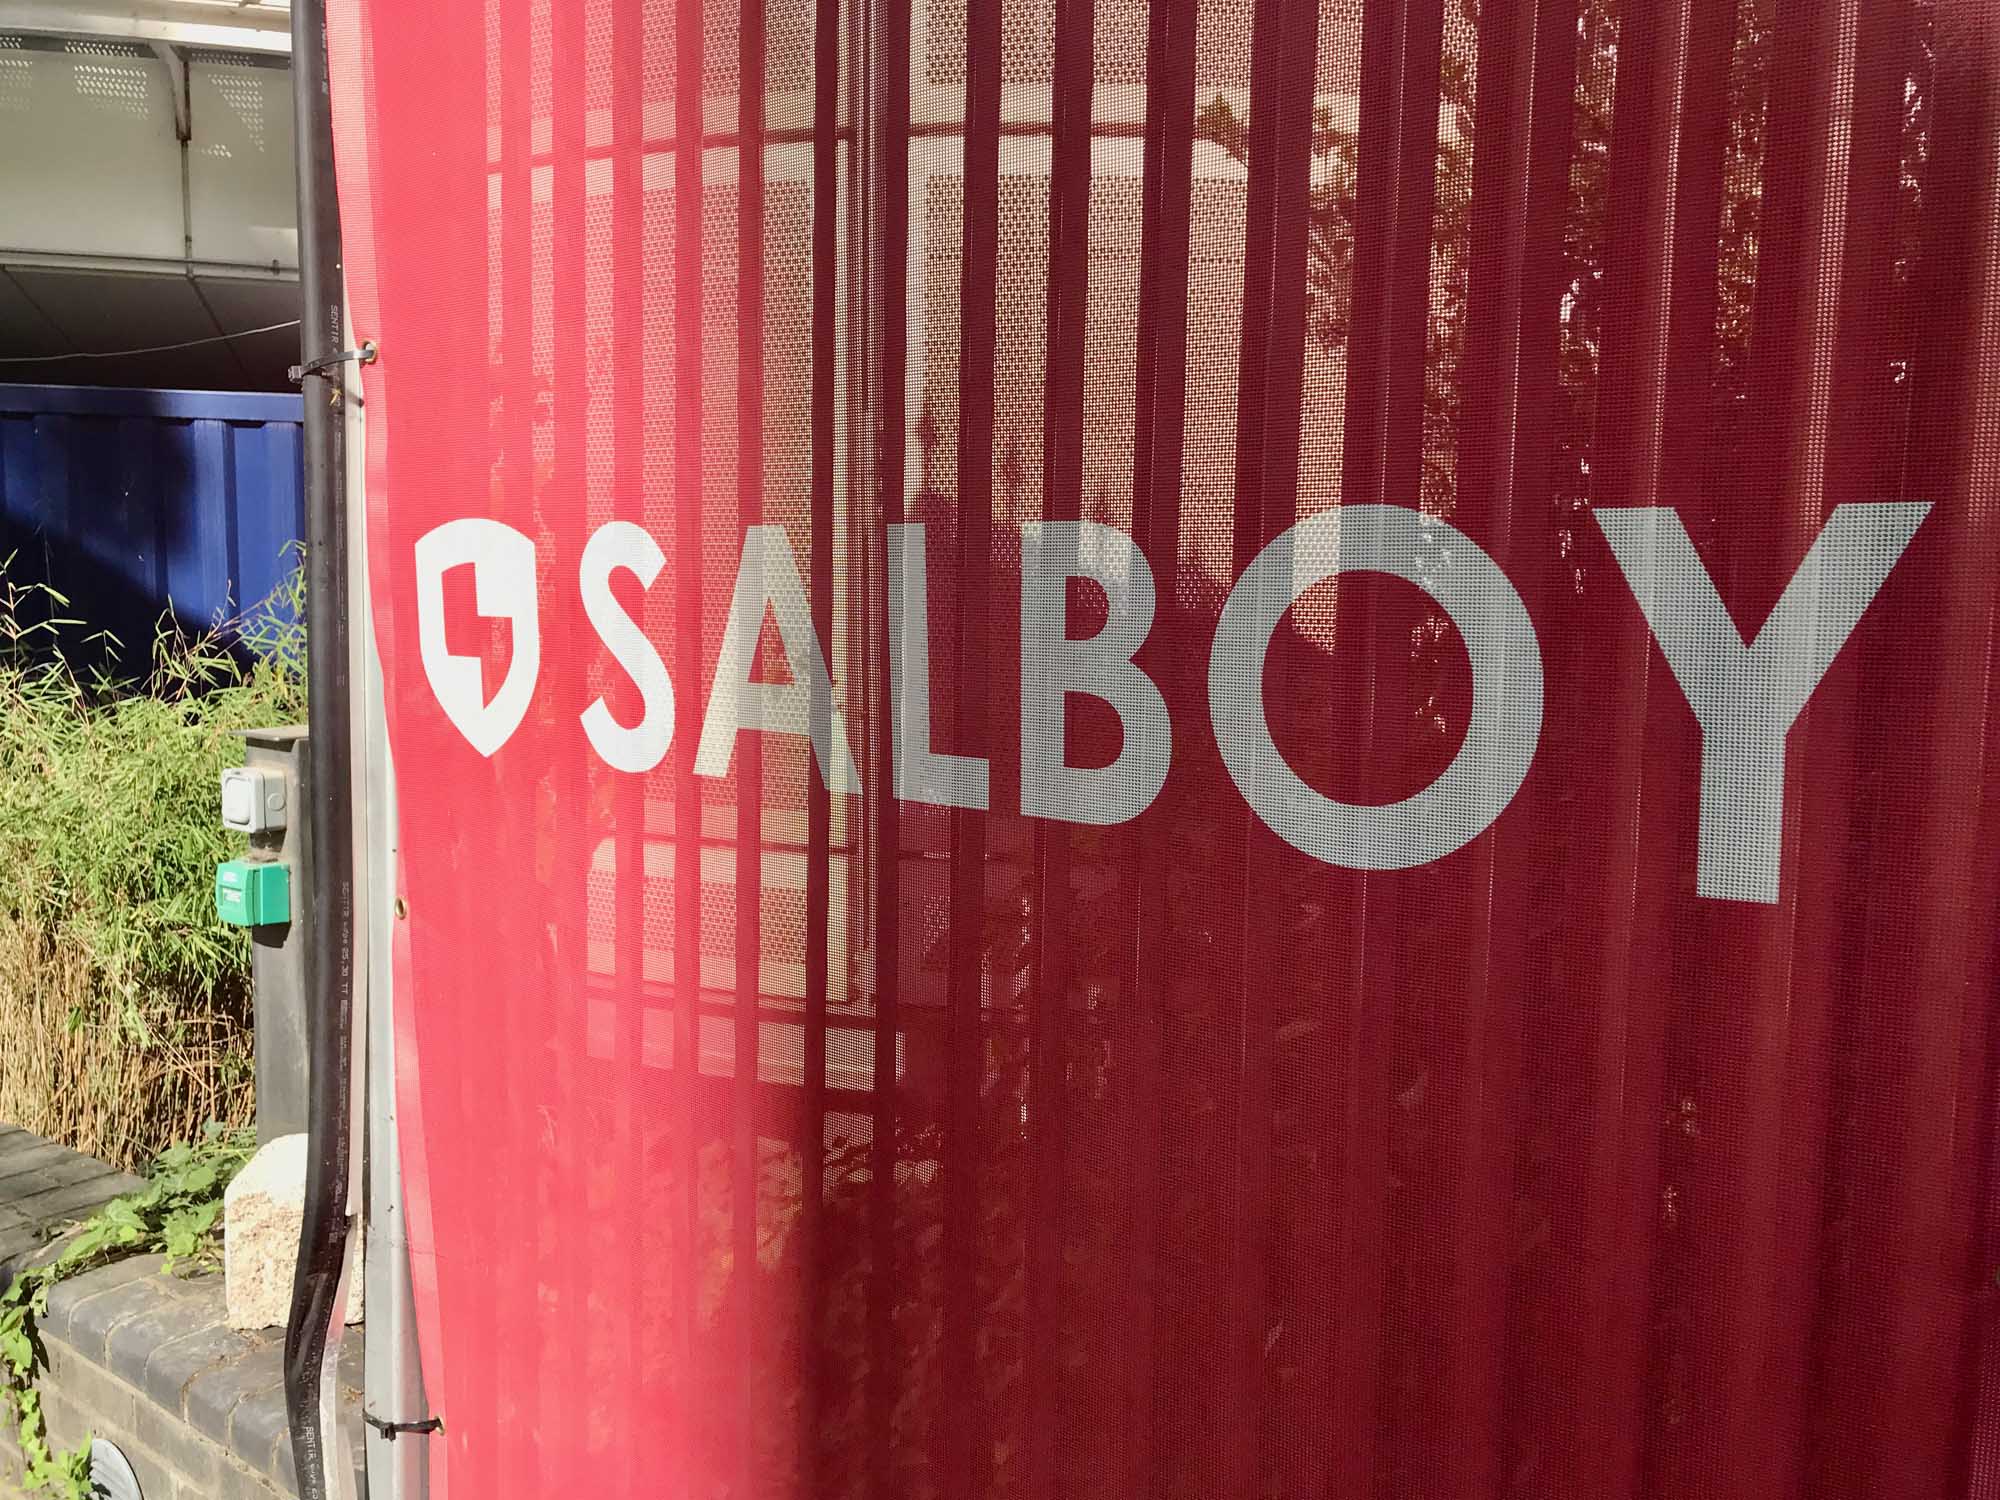 developer salboy logo hoarding